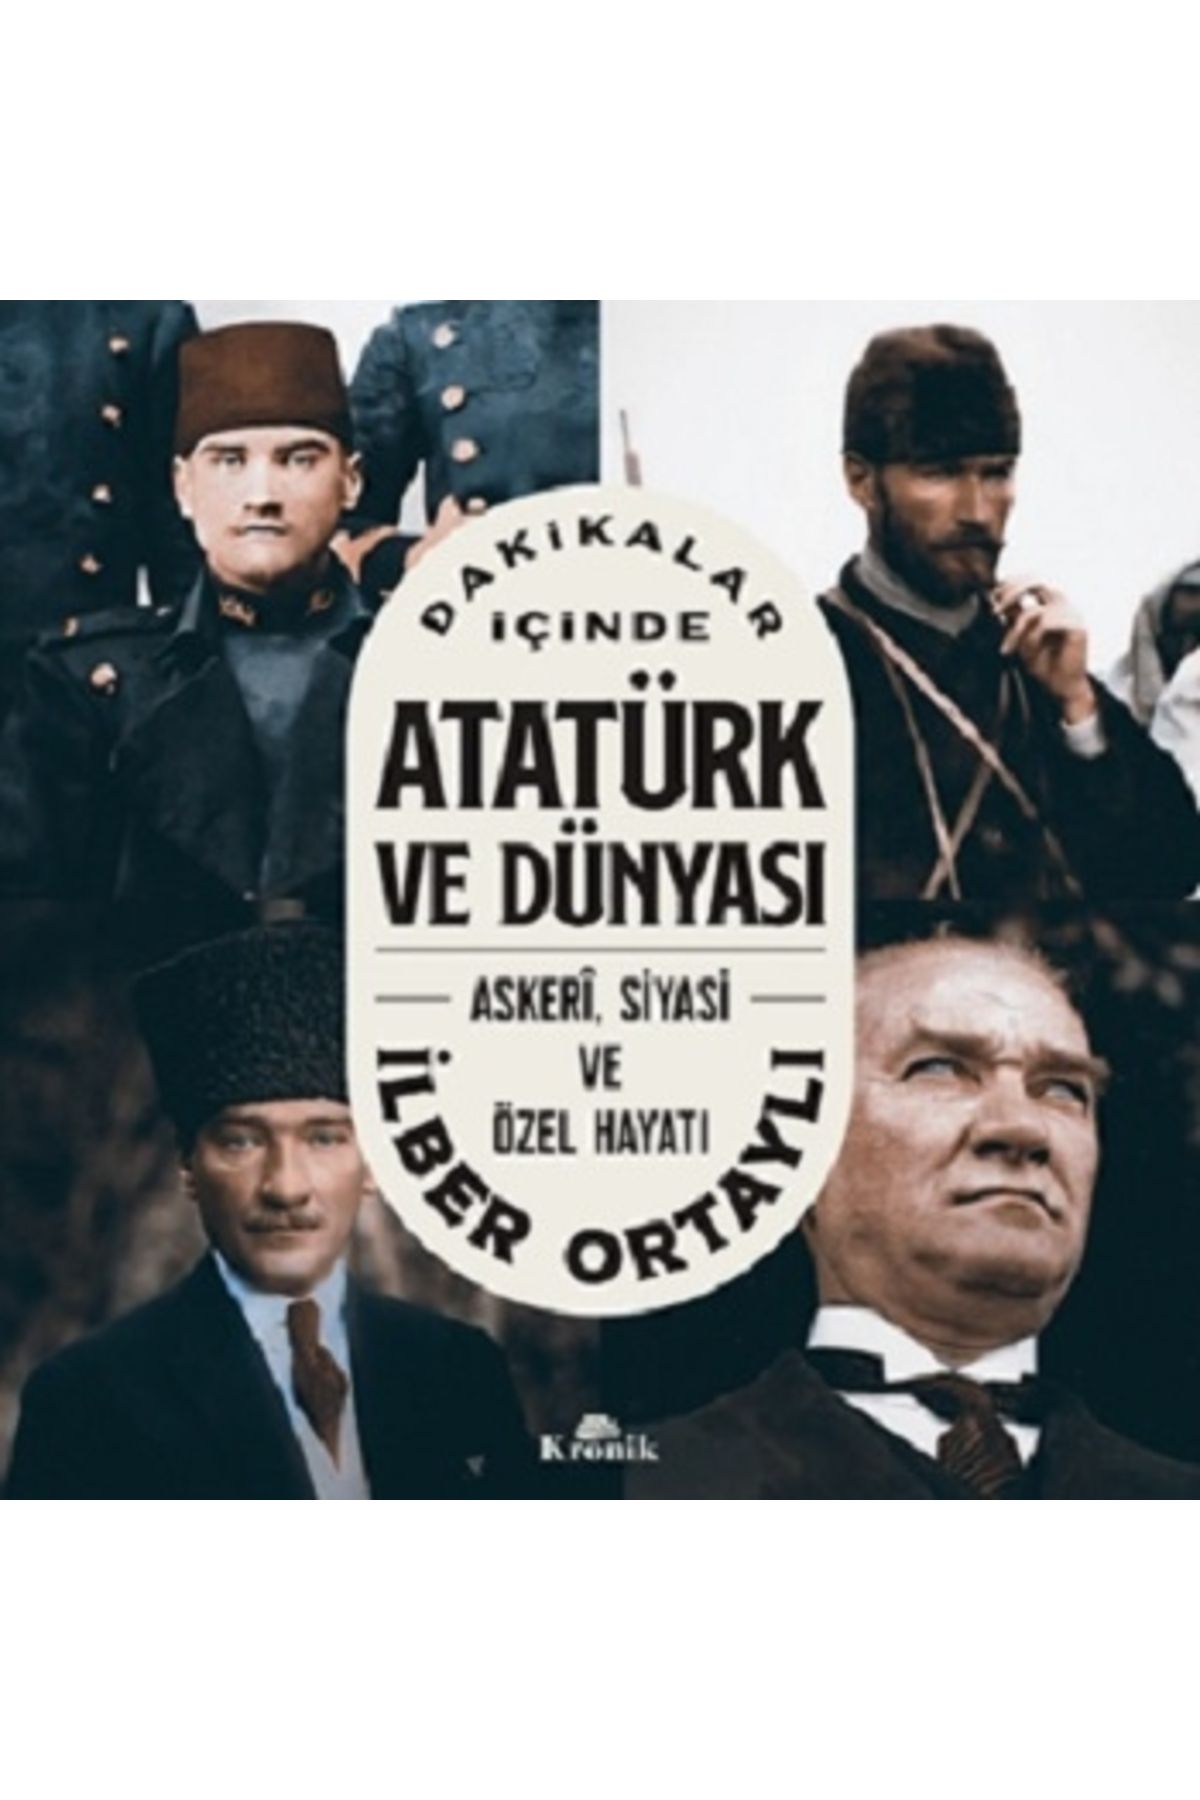 Kronik Kitap Dakikalar I?çinde Atatürk Ve Dünyası